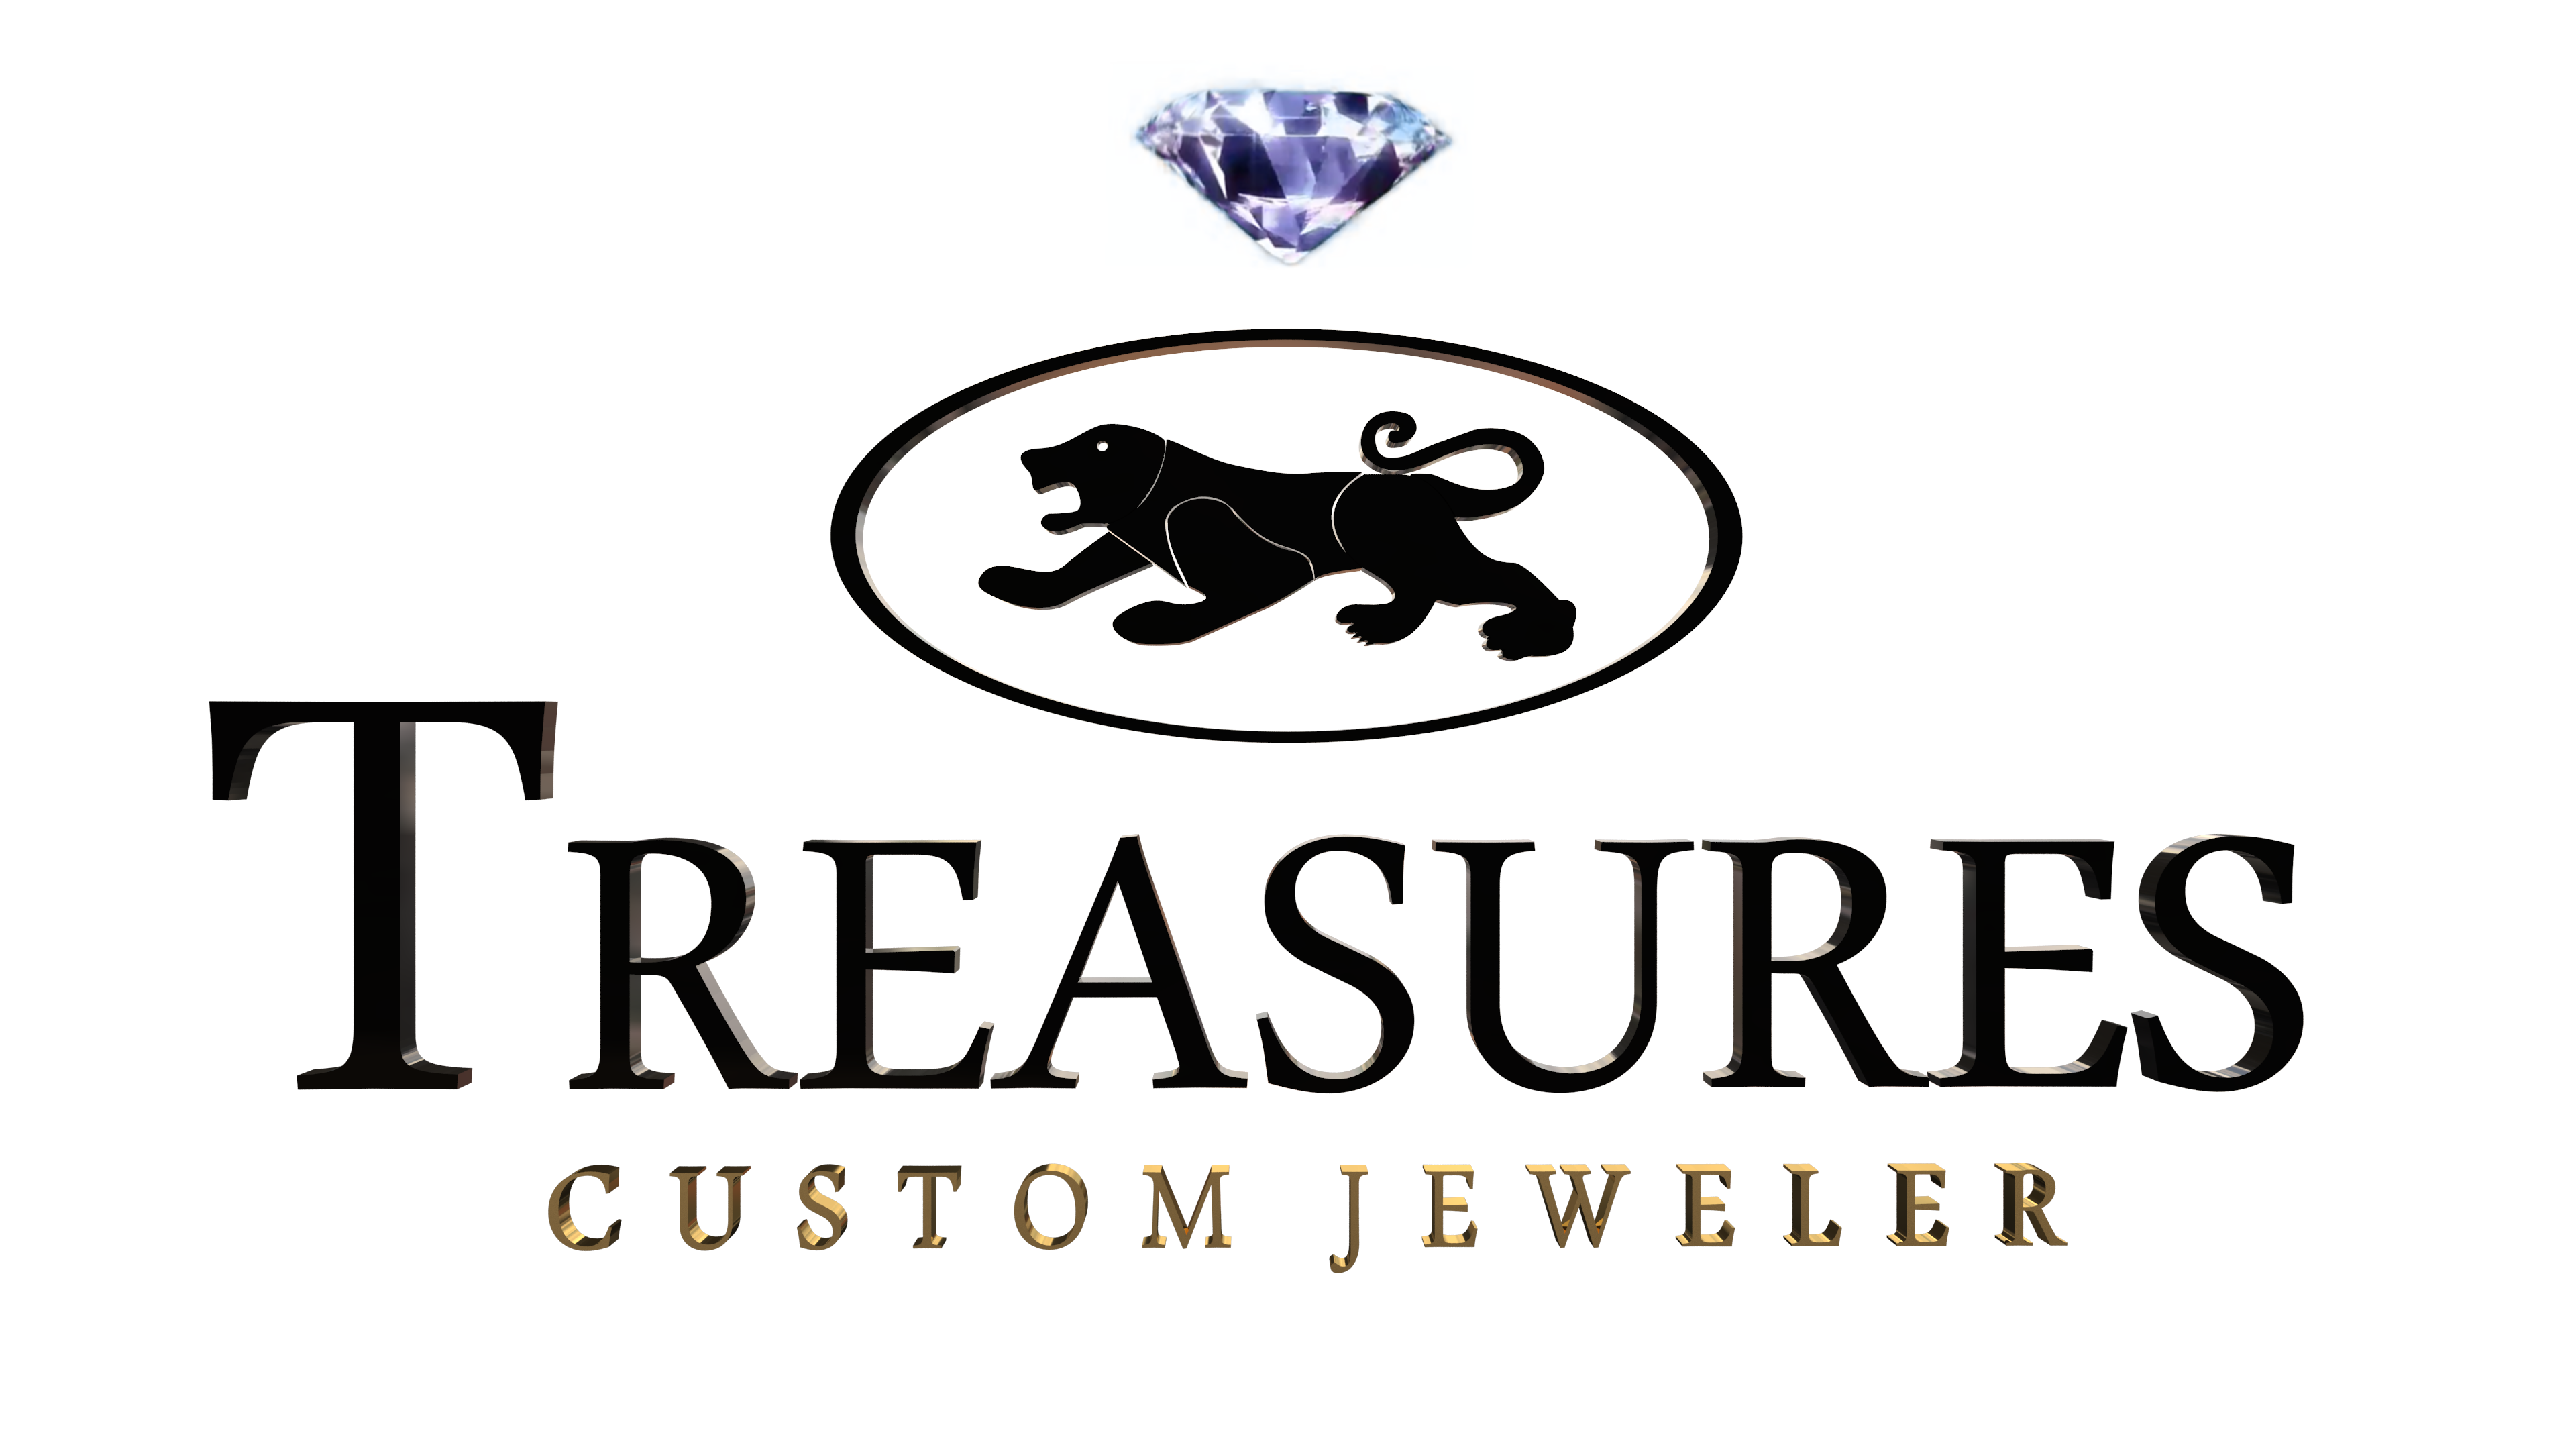 Treasures & Jewelers